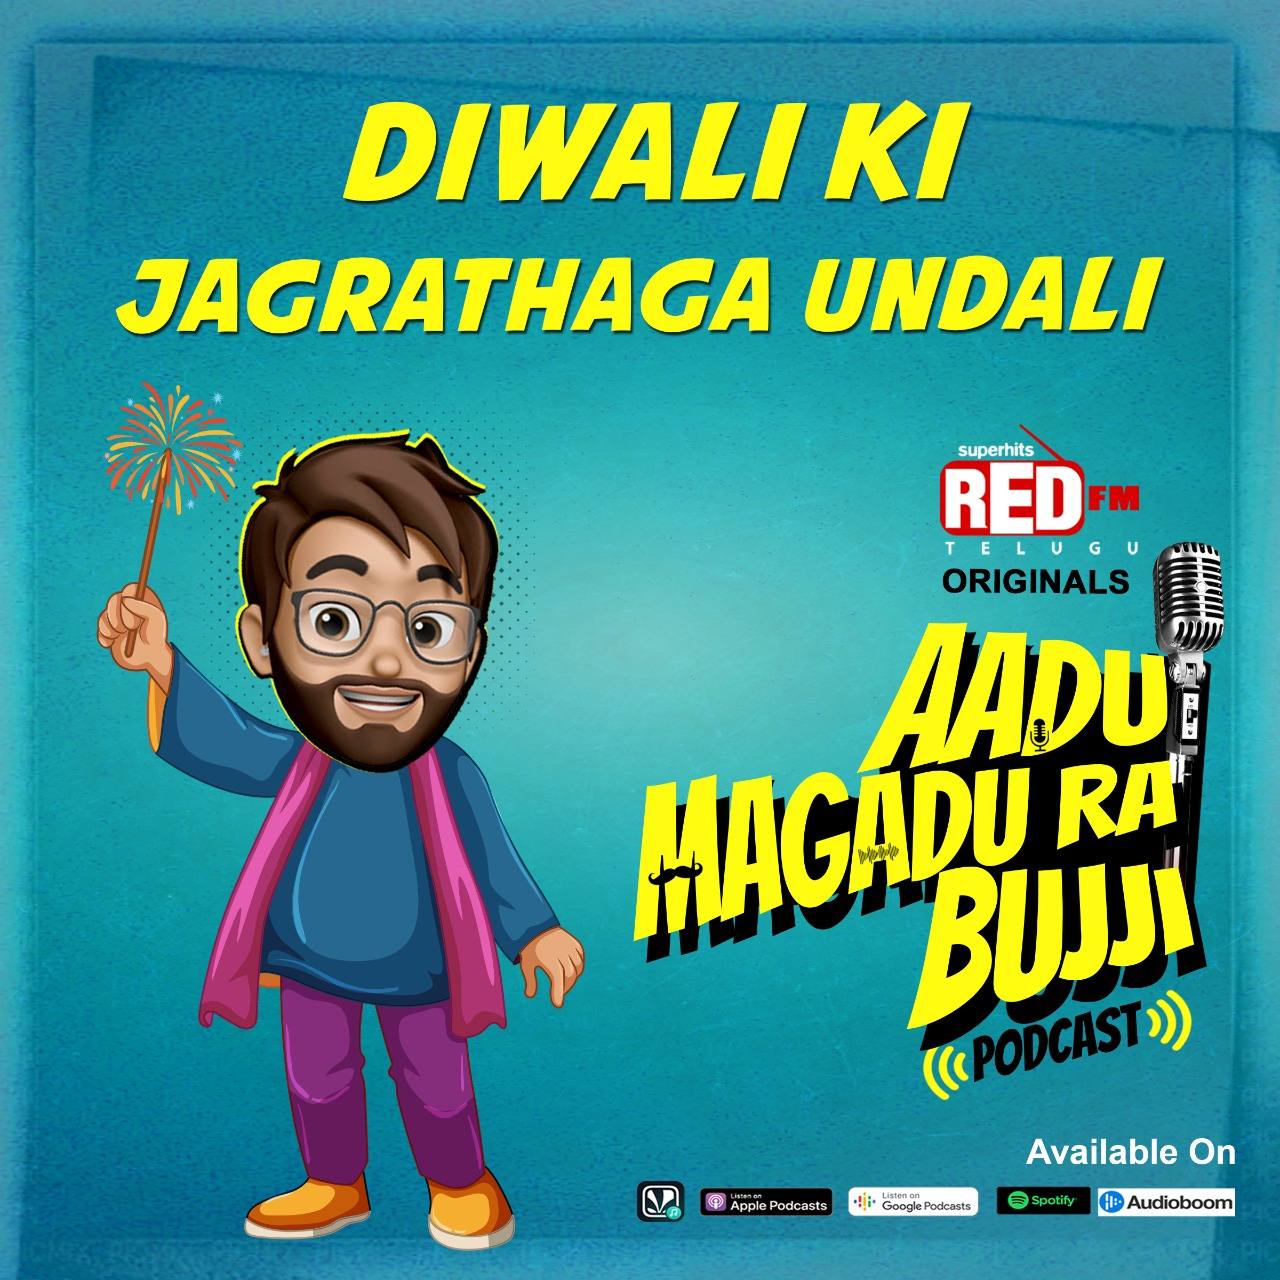 Diwali ki Jagrathaga Undali | E73| Aadu Magadra Bujji | Red FM Telugu